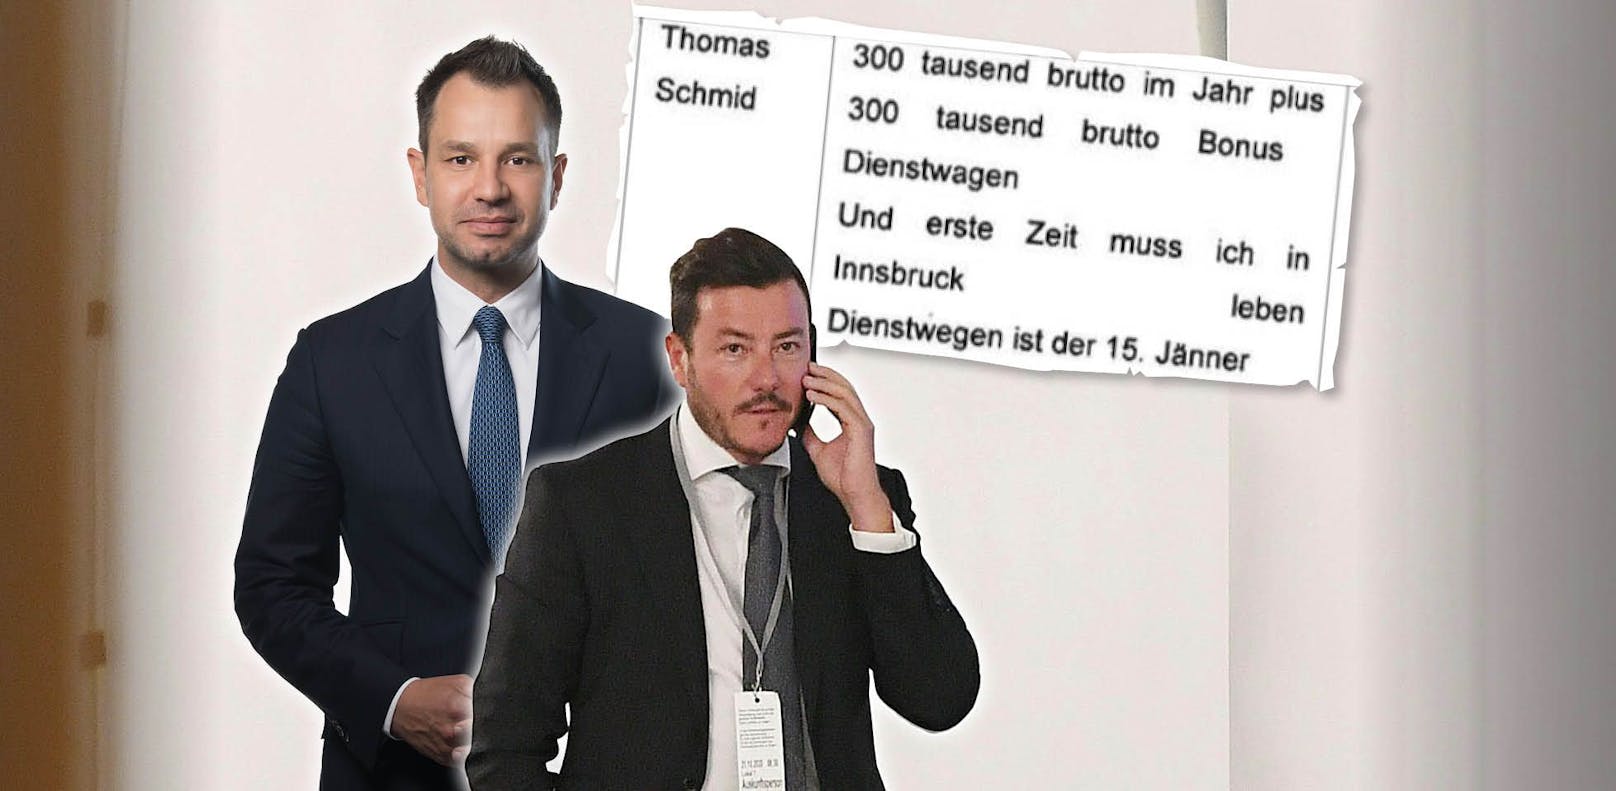 Thomas Schmid informierte seine Mutter per Chat von René Benkos Job-Offert.